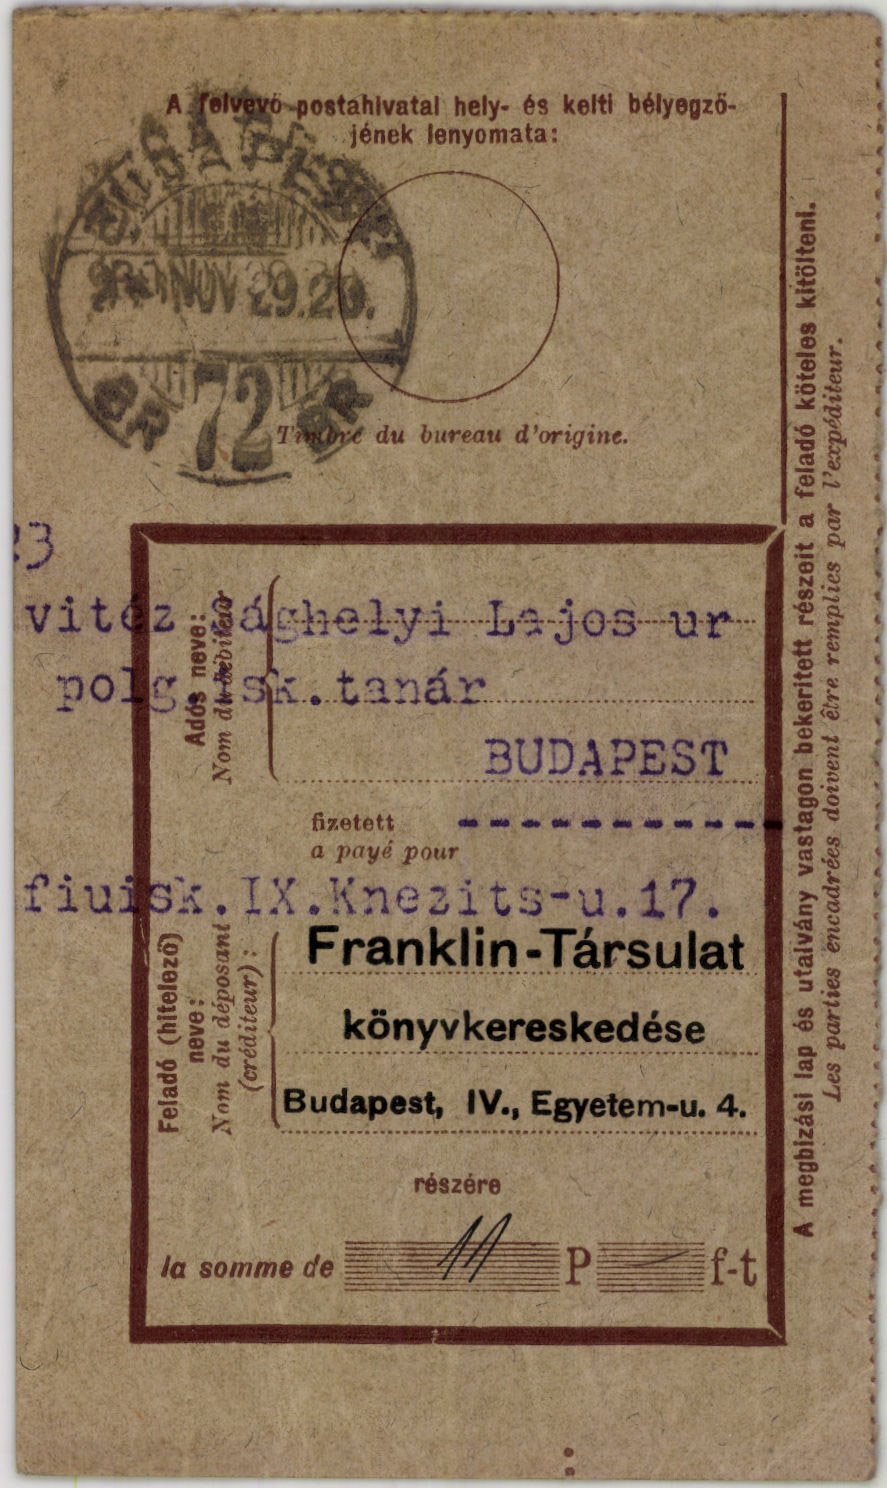 Franklin-Társulat könyvkereskedése (Magyar Kereskedelmi és Vendéglátóipari Múzeum CC BY-NC-SA)